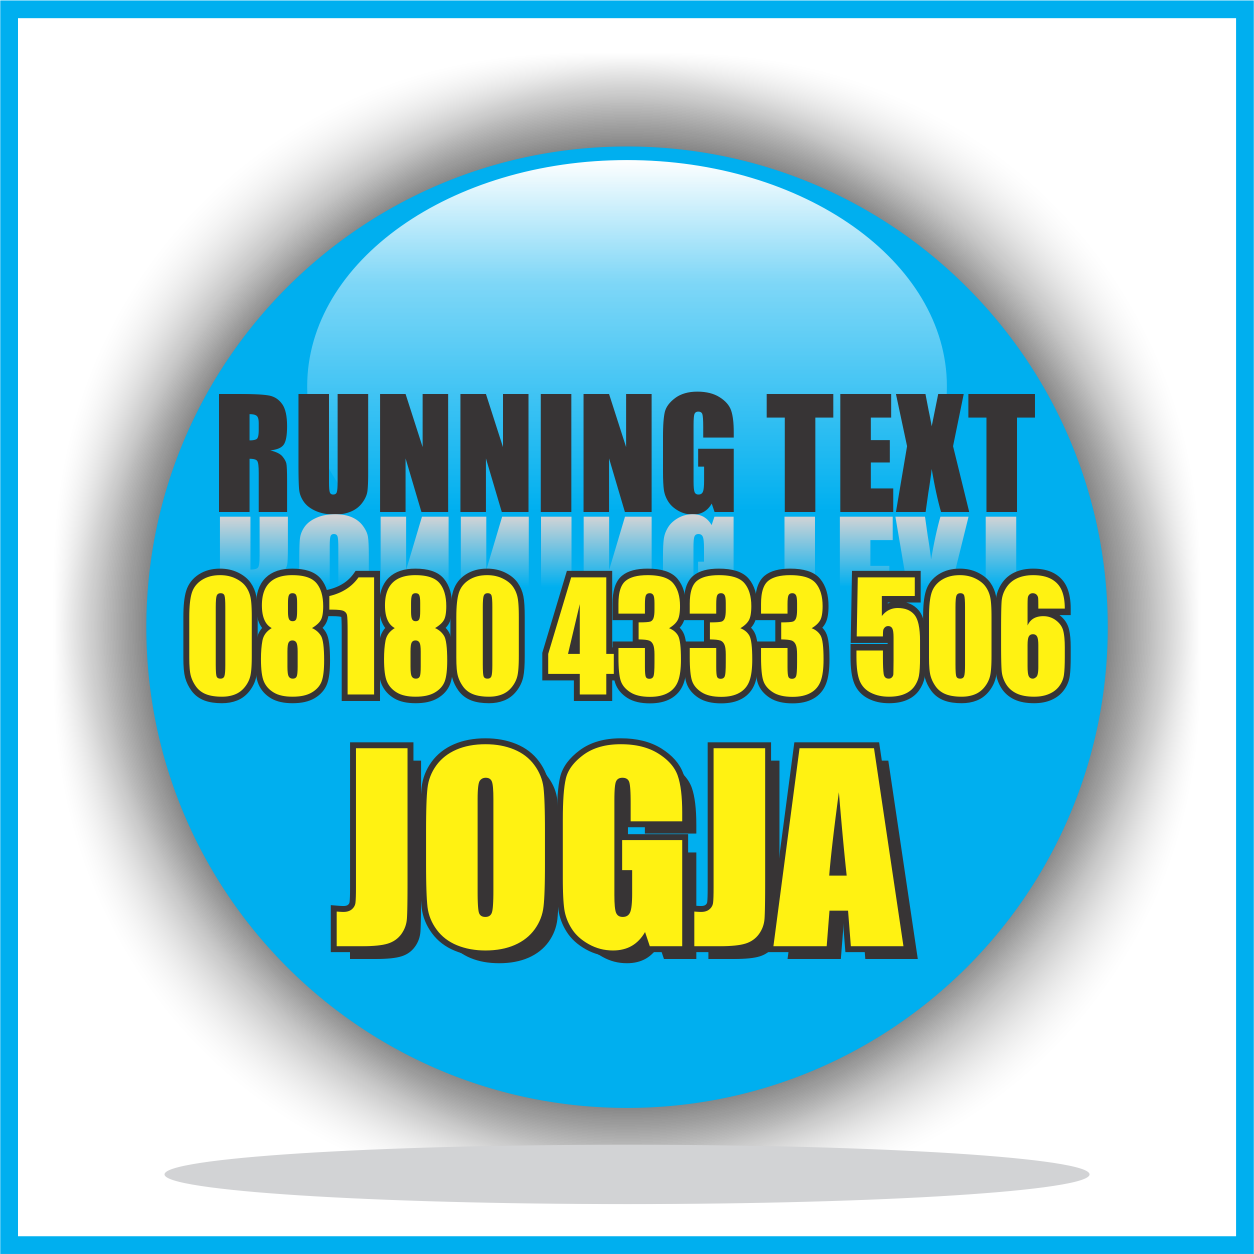 running text murah jogja